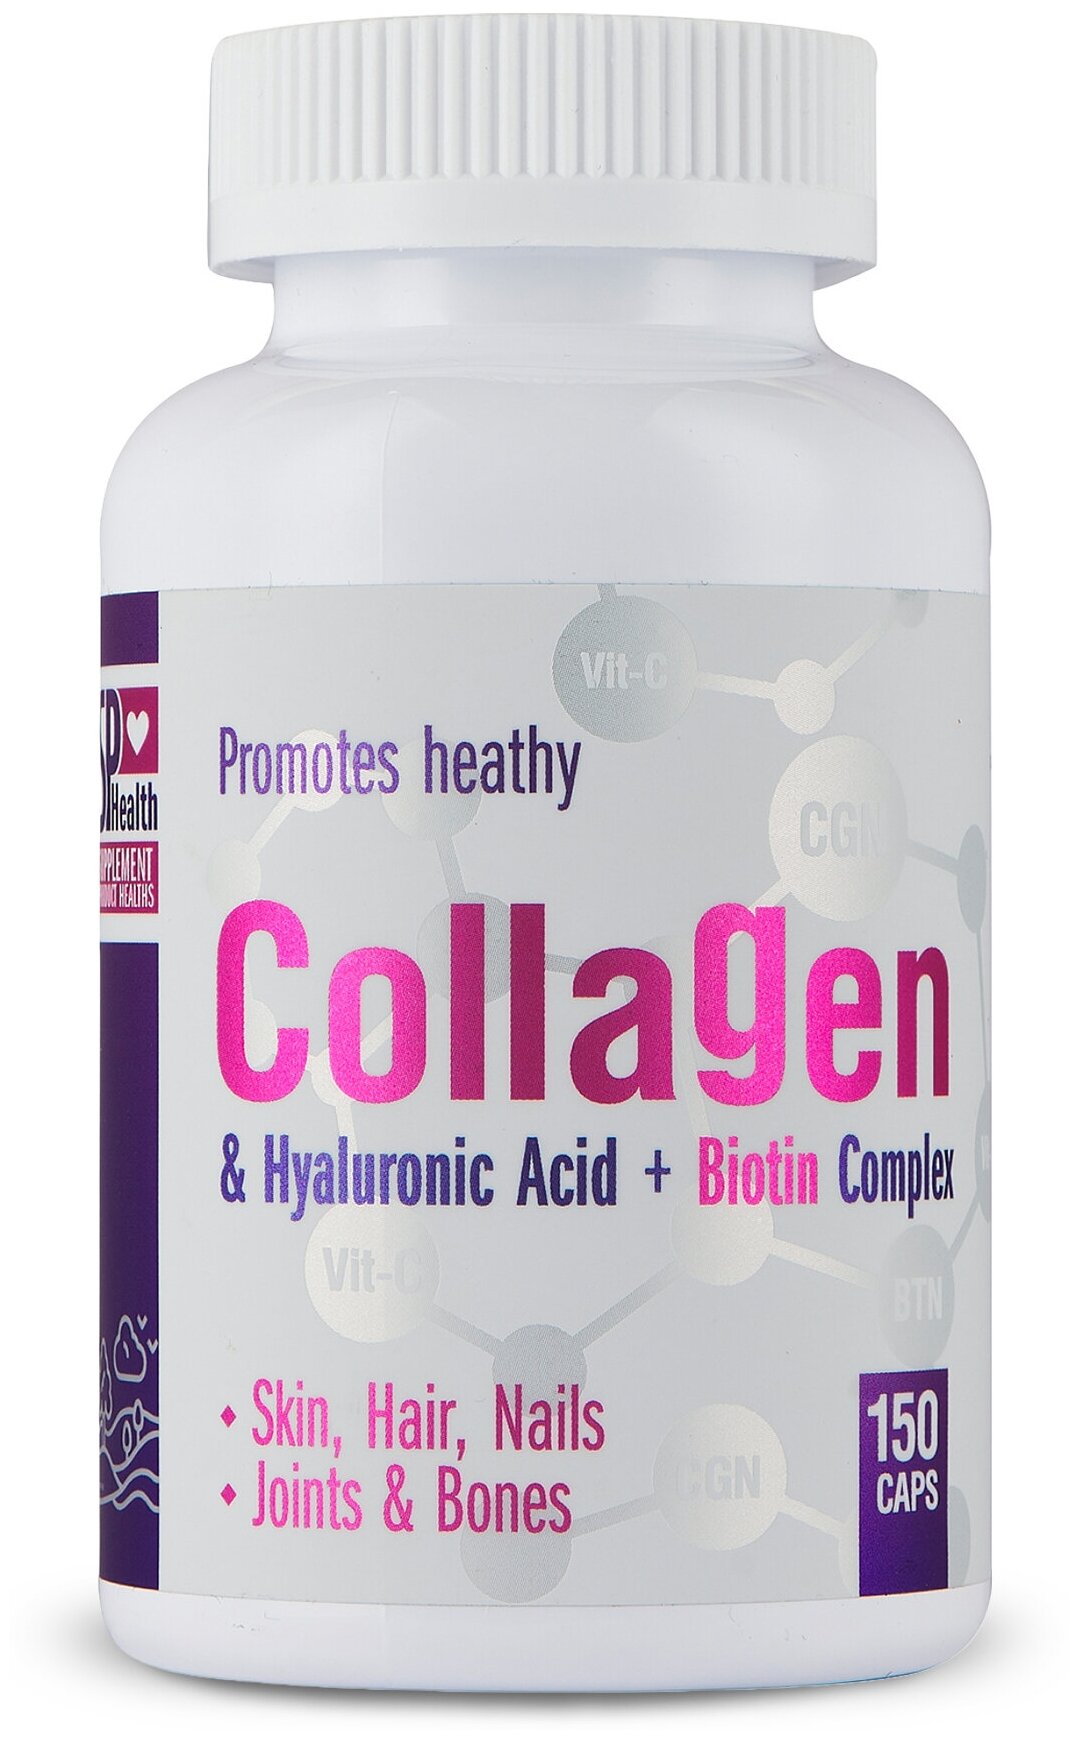 Collagen & Hyaluronic acid + Biotin комплекс с природным коллагеном и гиалуроновой кислотой пищевая добавка 150 капсул SPHEALTH